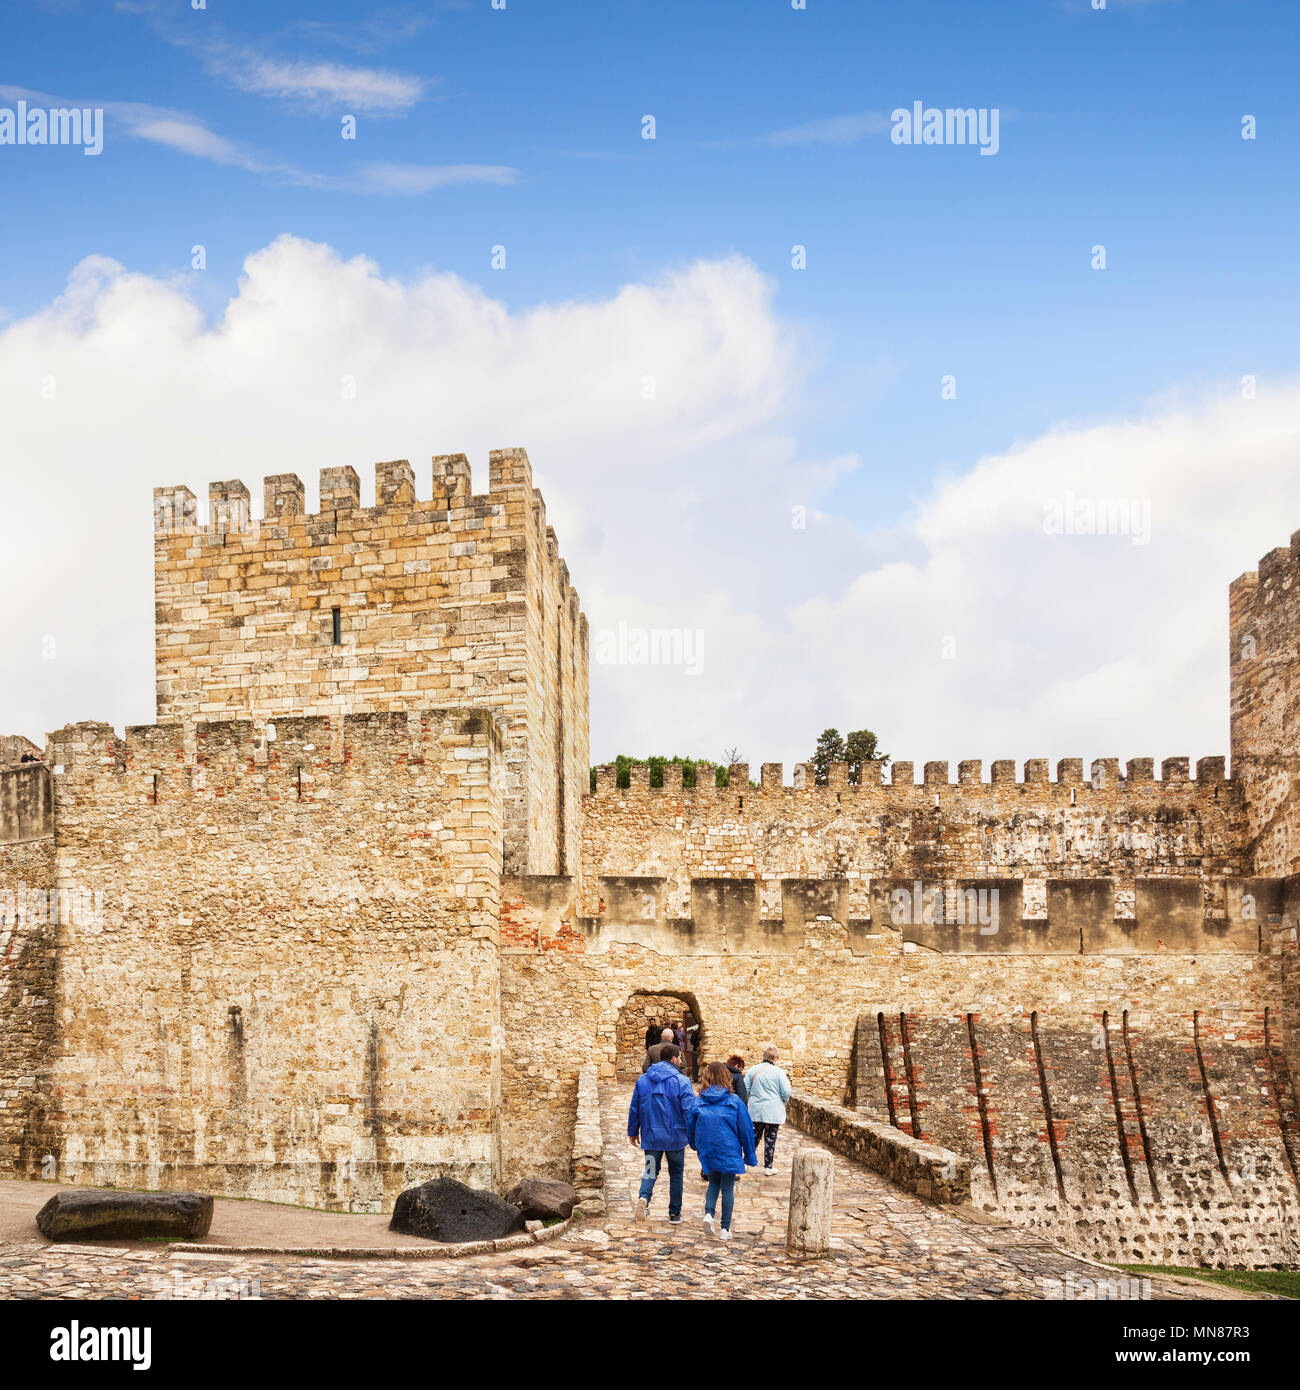 1 mars 2018 : Lisbonne Portugal - Touristes de Castle of St George. Banque D'Images